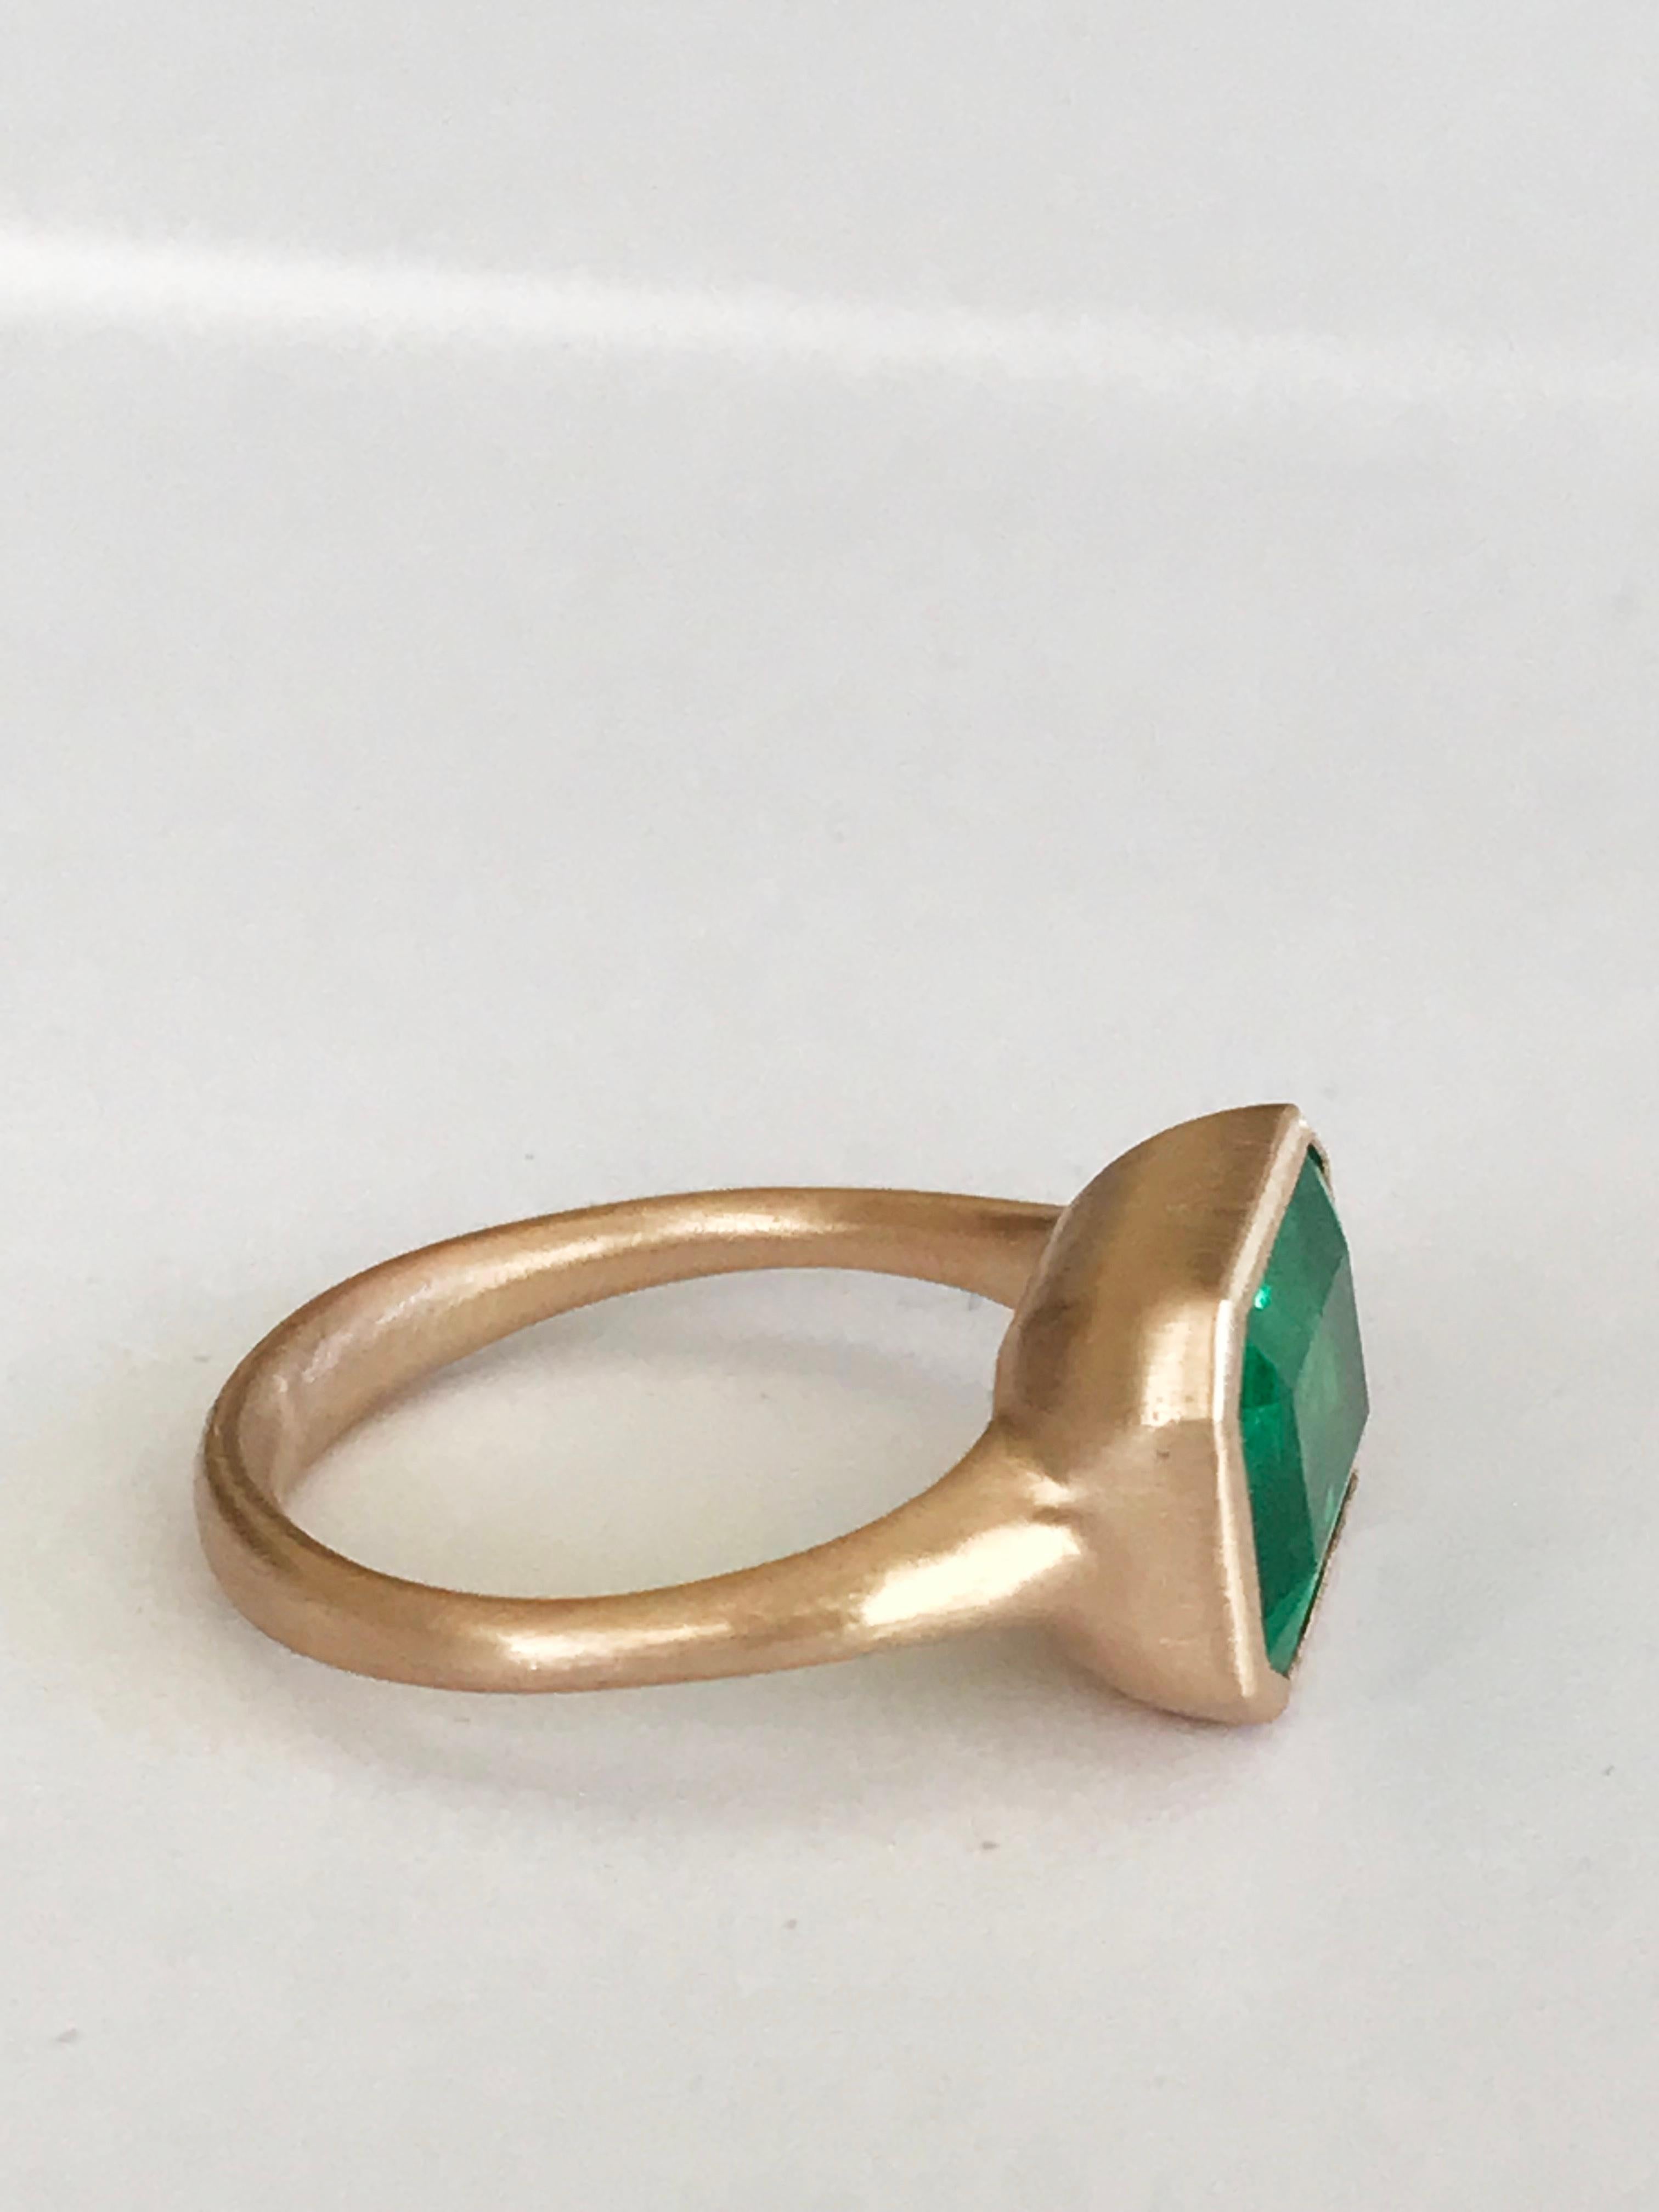 Emerald Cut Dalben 5.1 Carat Emerald Rose Gold Ring For Sale